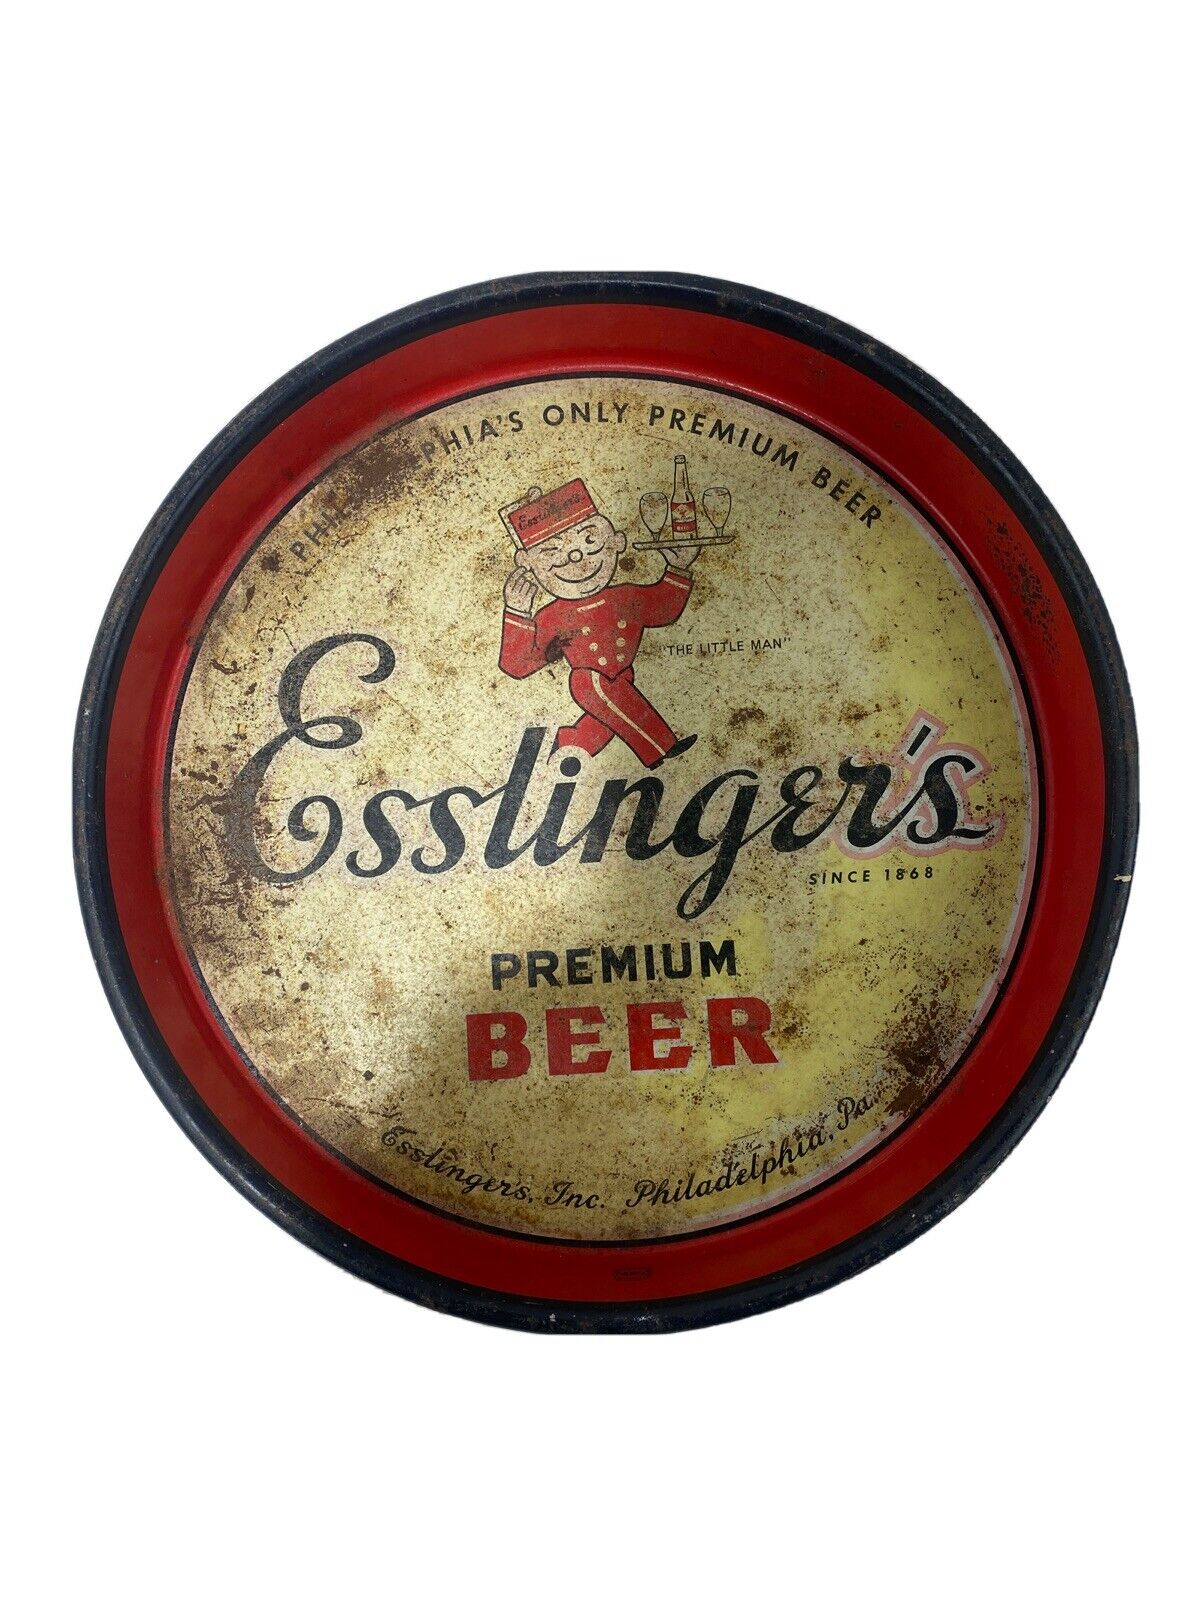 Vintage Esslinger’s Beer “The Little Man”Tray Novelty Advertising Man Cave Vtg